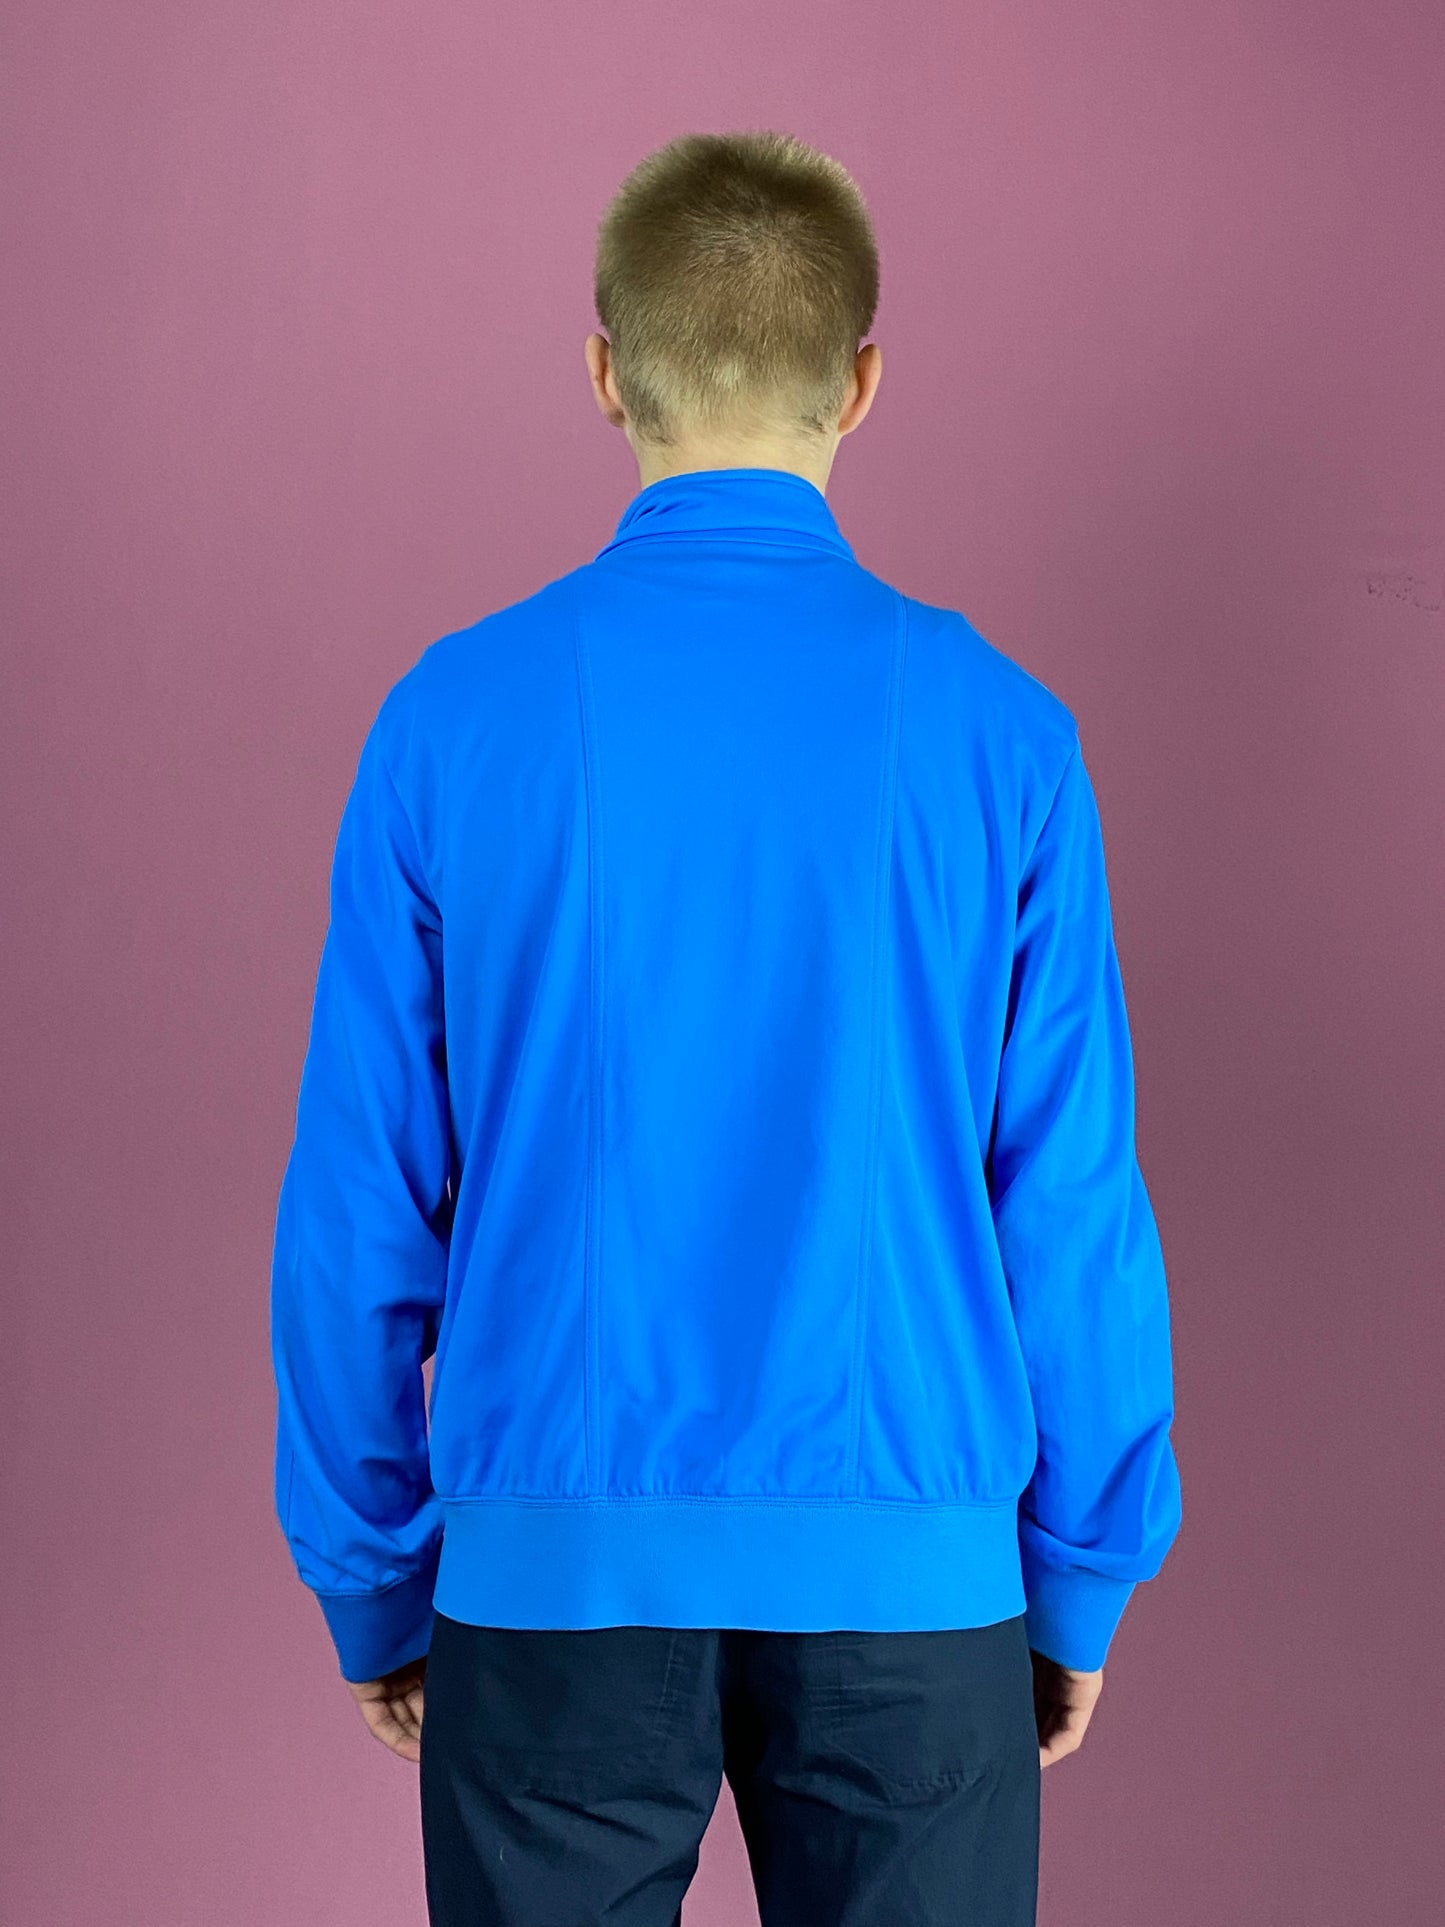 Nike Vintage Men's Track Jacket - Medium Blue Polyester